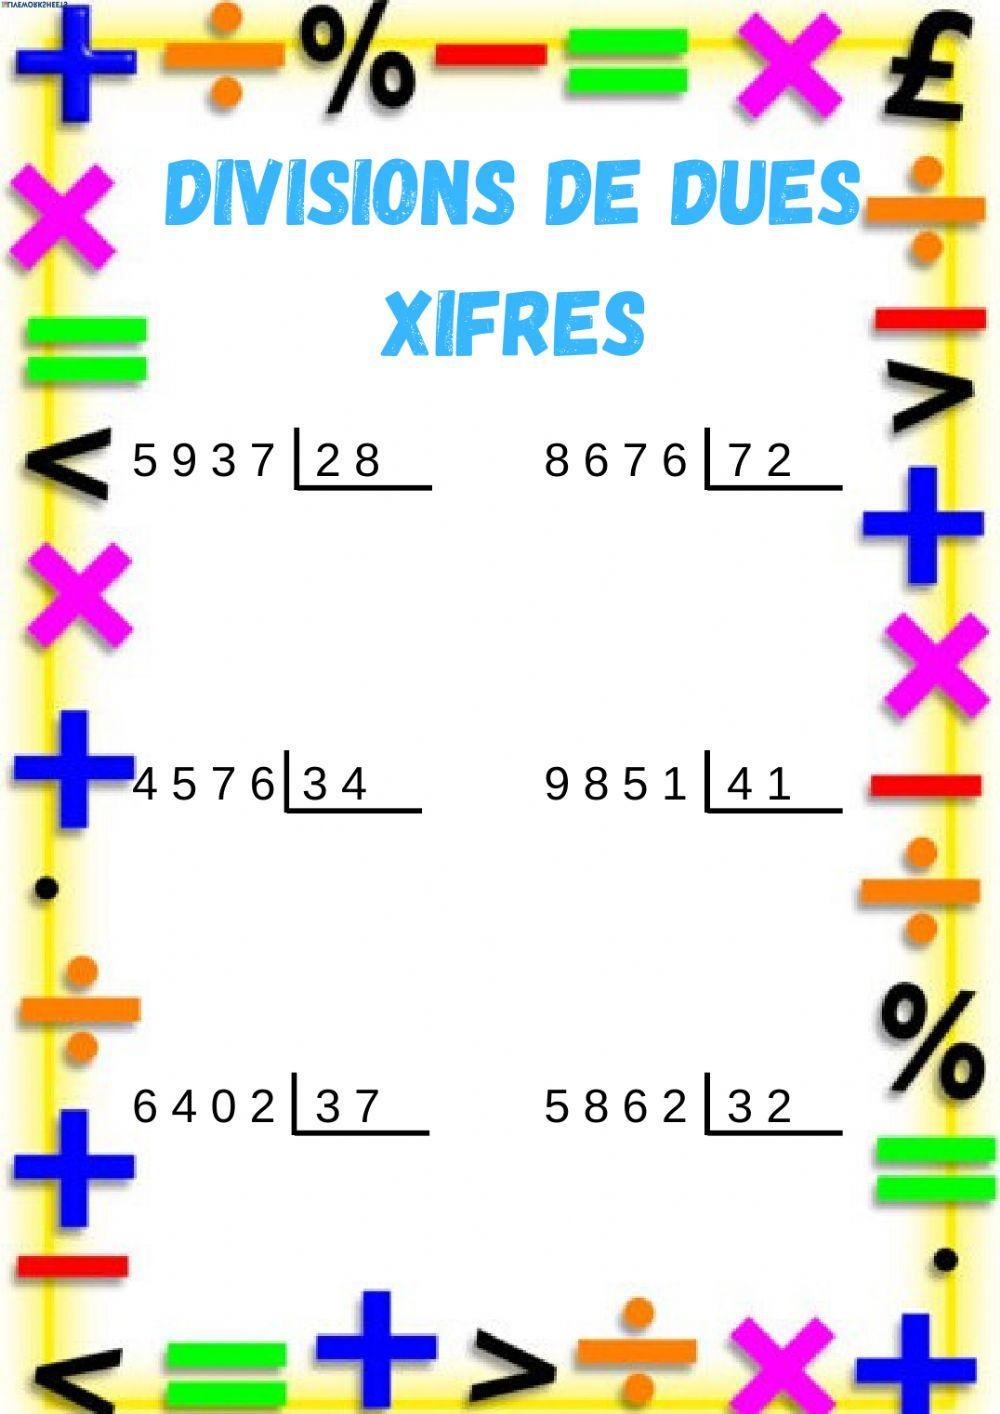 Divisions de dues xifres